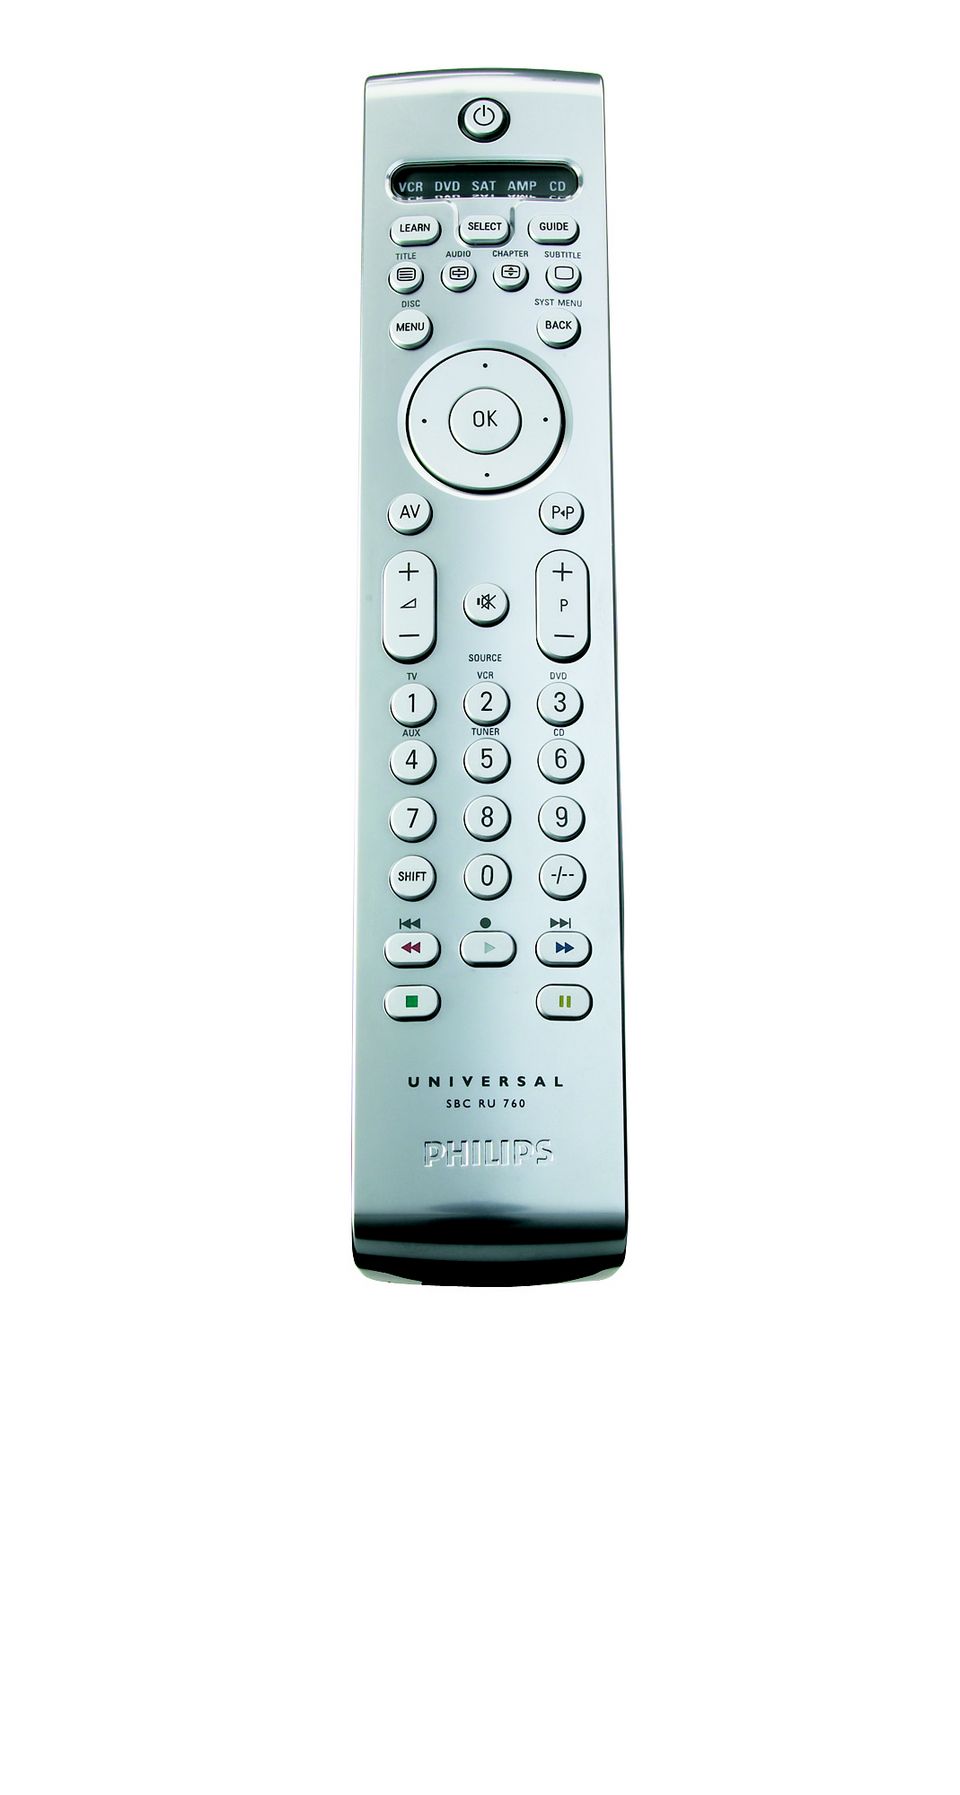 Télécommande universelle pour Philips Smart TV - My Equipment My Home